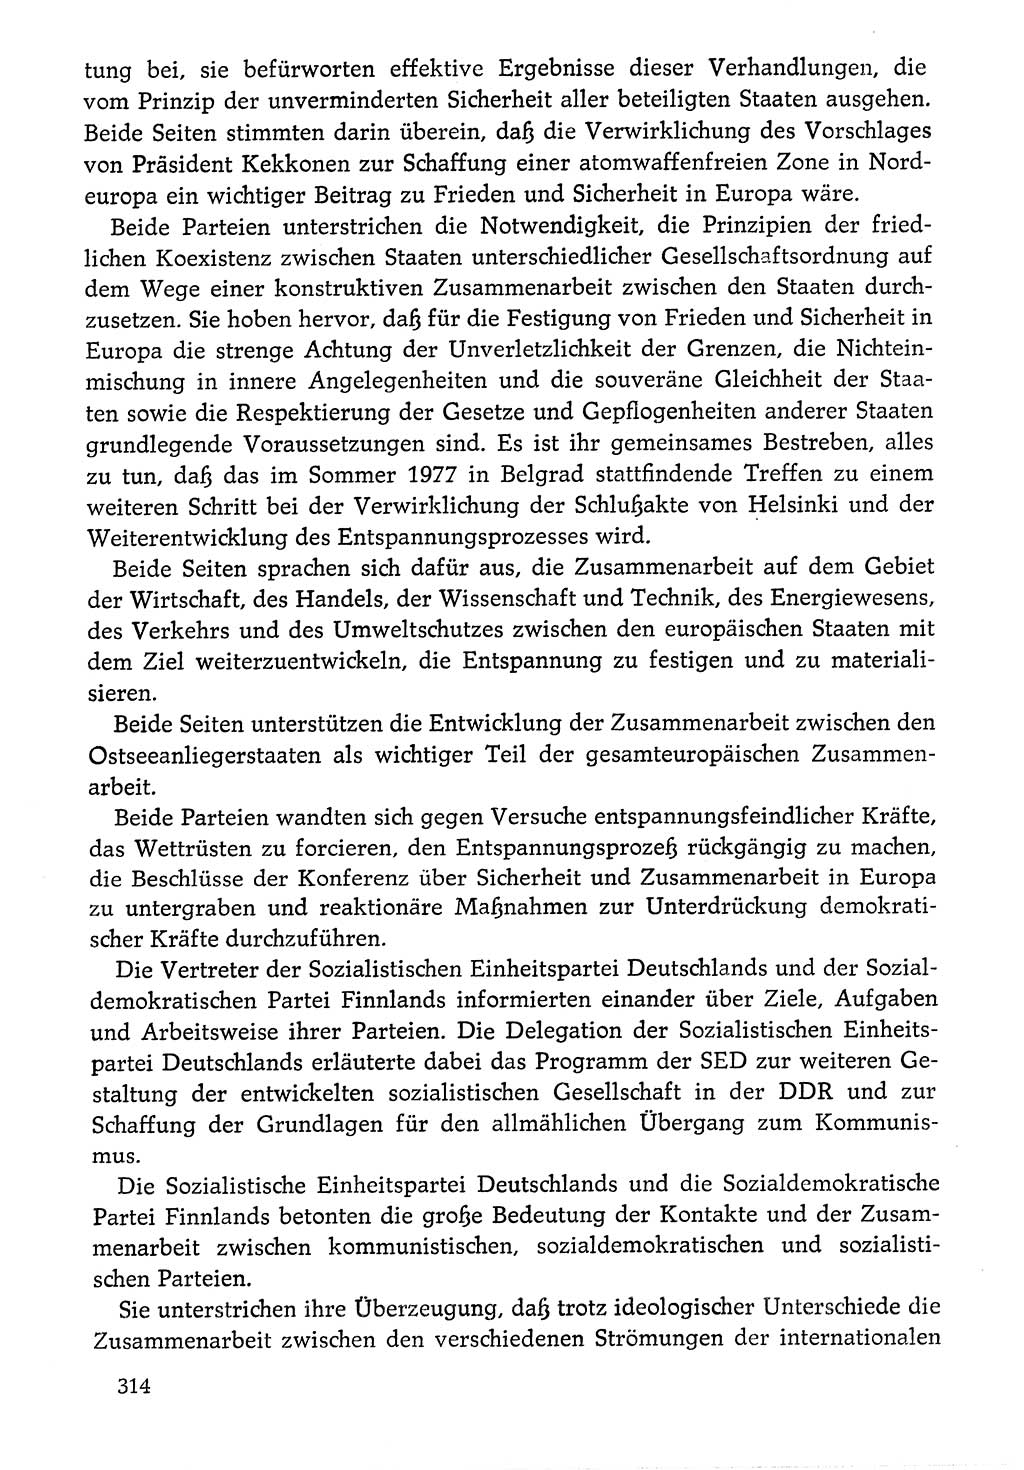 Dokumente der Sozialistischen Einheitspartei Deutschlands (SED) [Deutsche Demokratische Republik (DDR)] 1976-1977, Seite 314 (Dok. SED DDR 1976-1977, S. 314)